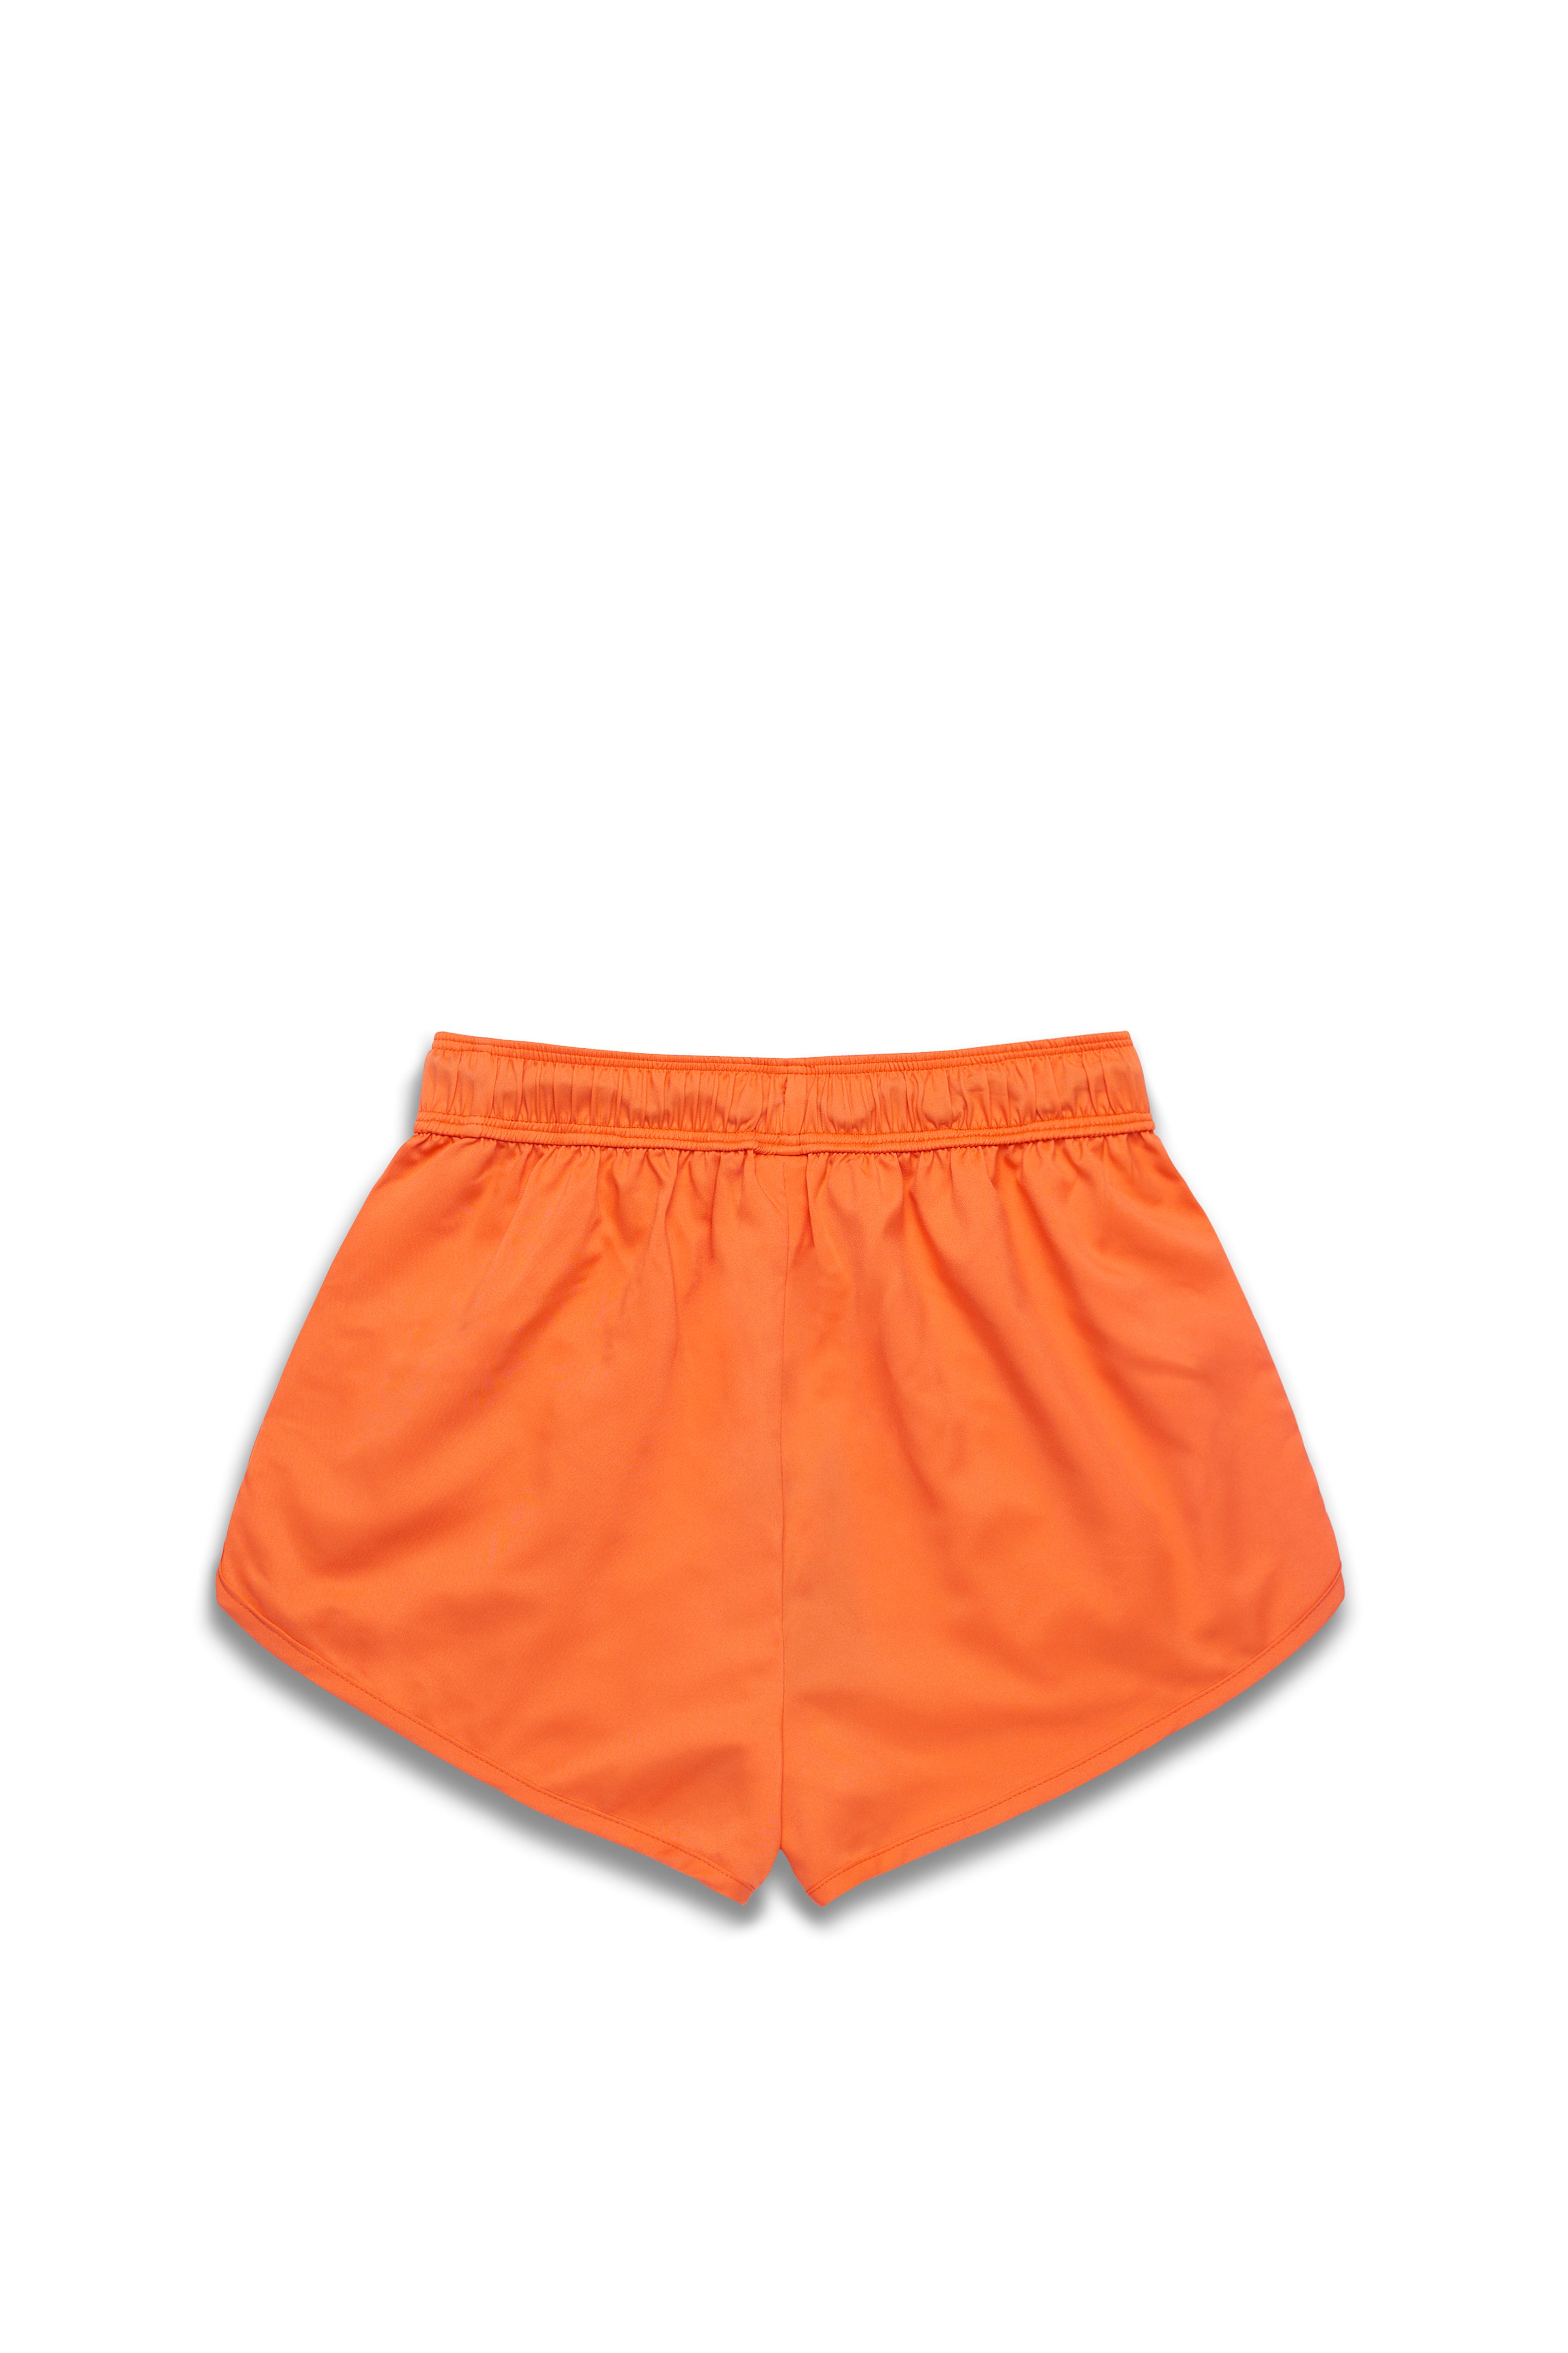 Everyday Shorts - Orange